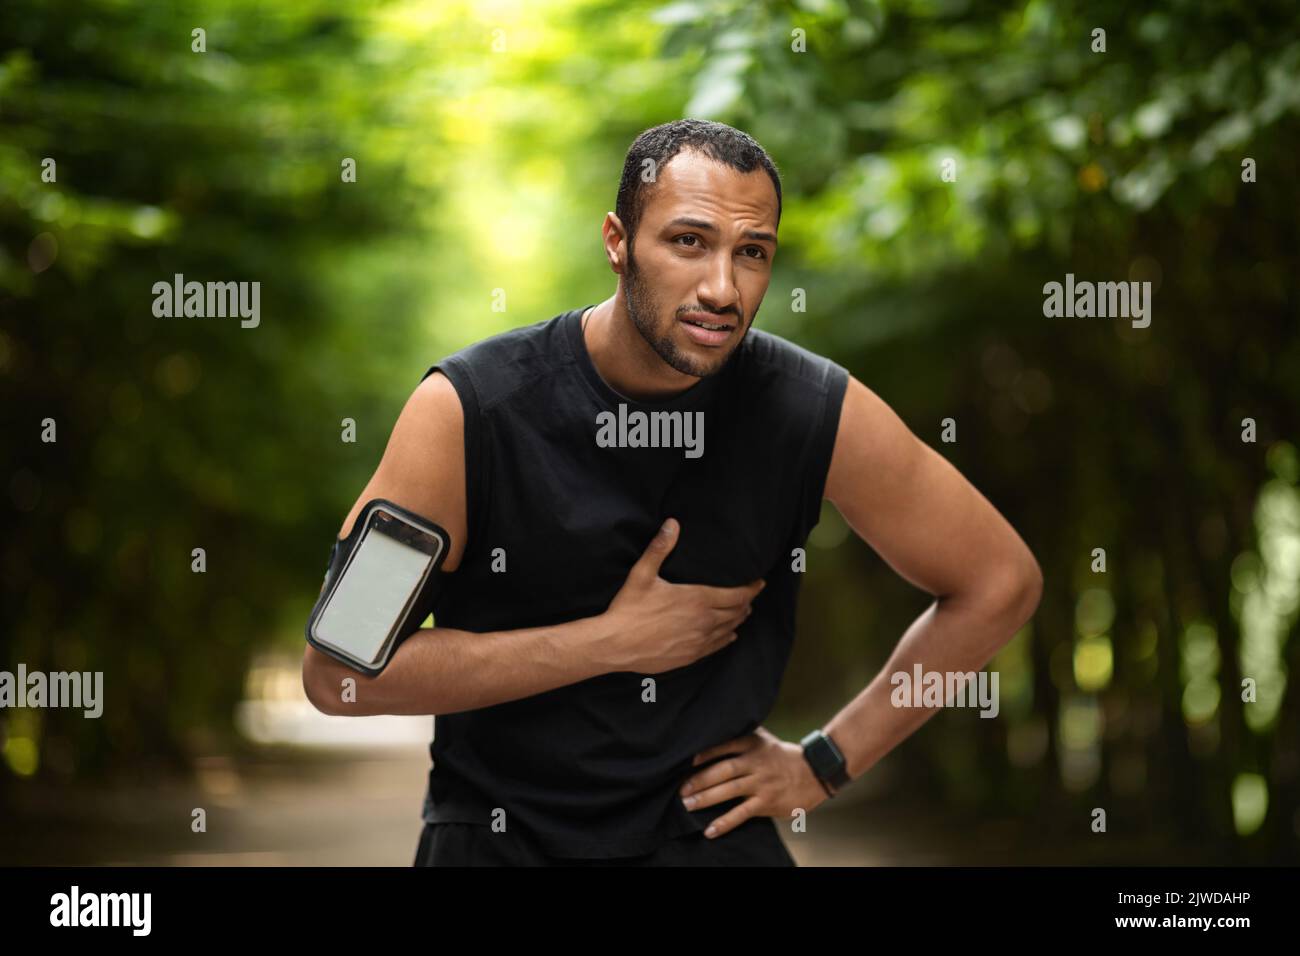 Sportif afro-américain souffrant de douleurs cardiaques, s'entraîner à l'extérieur Banque D'Images